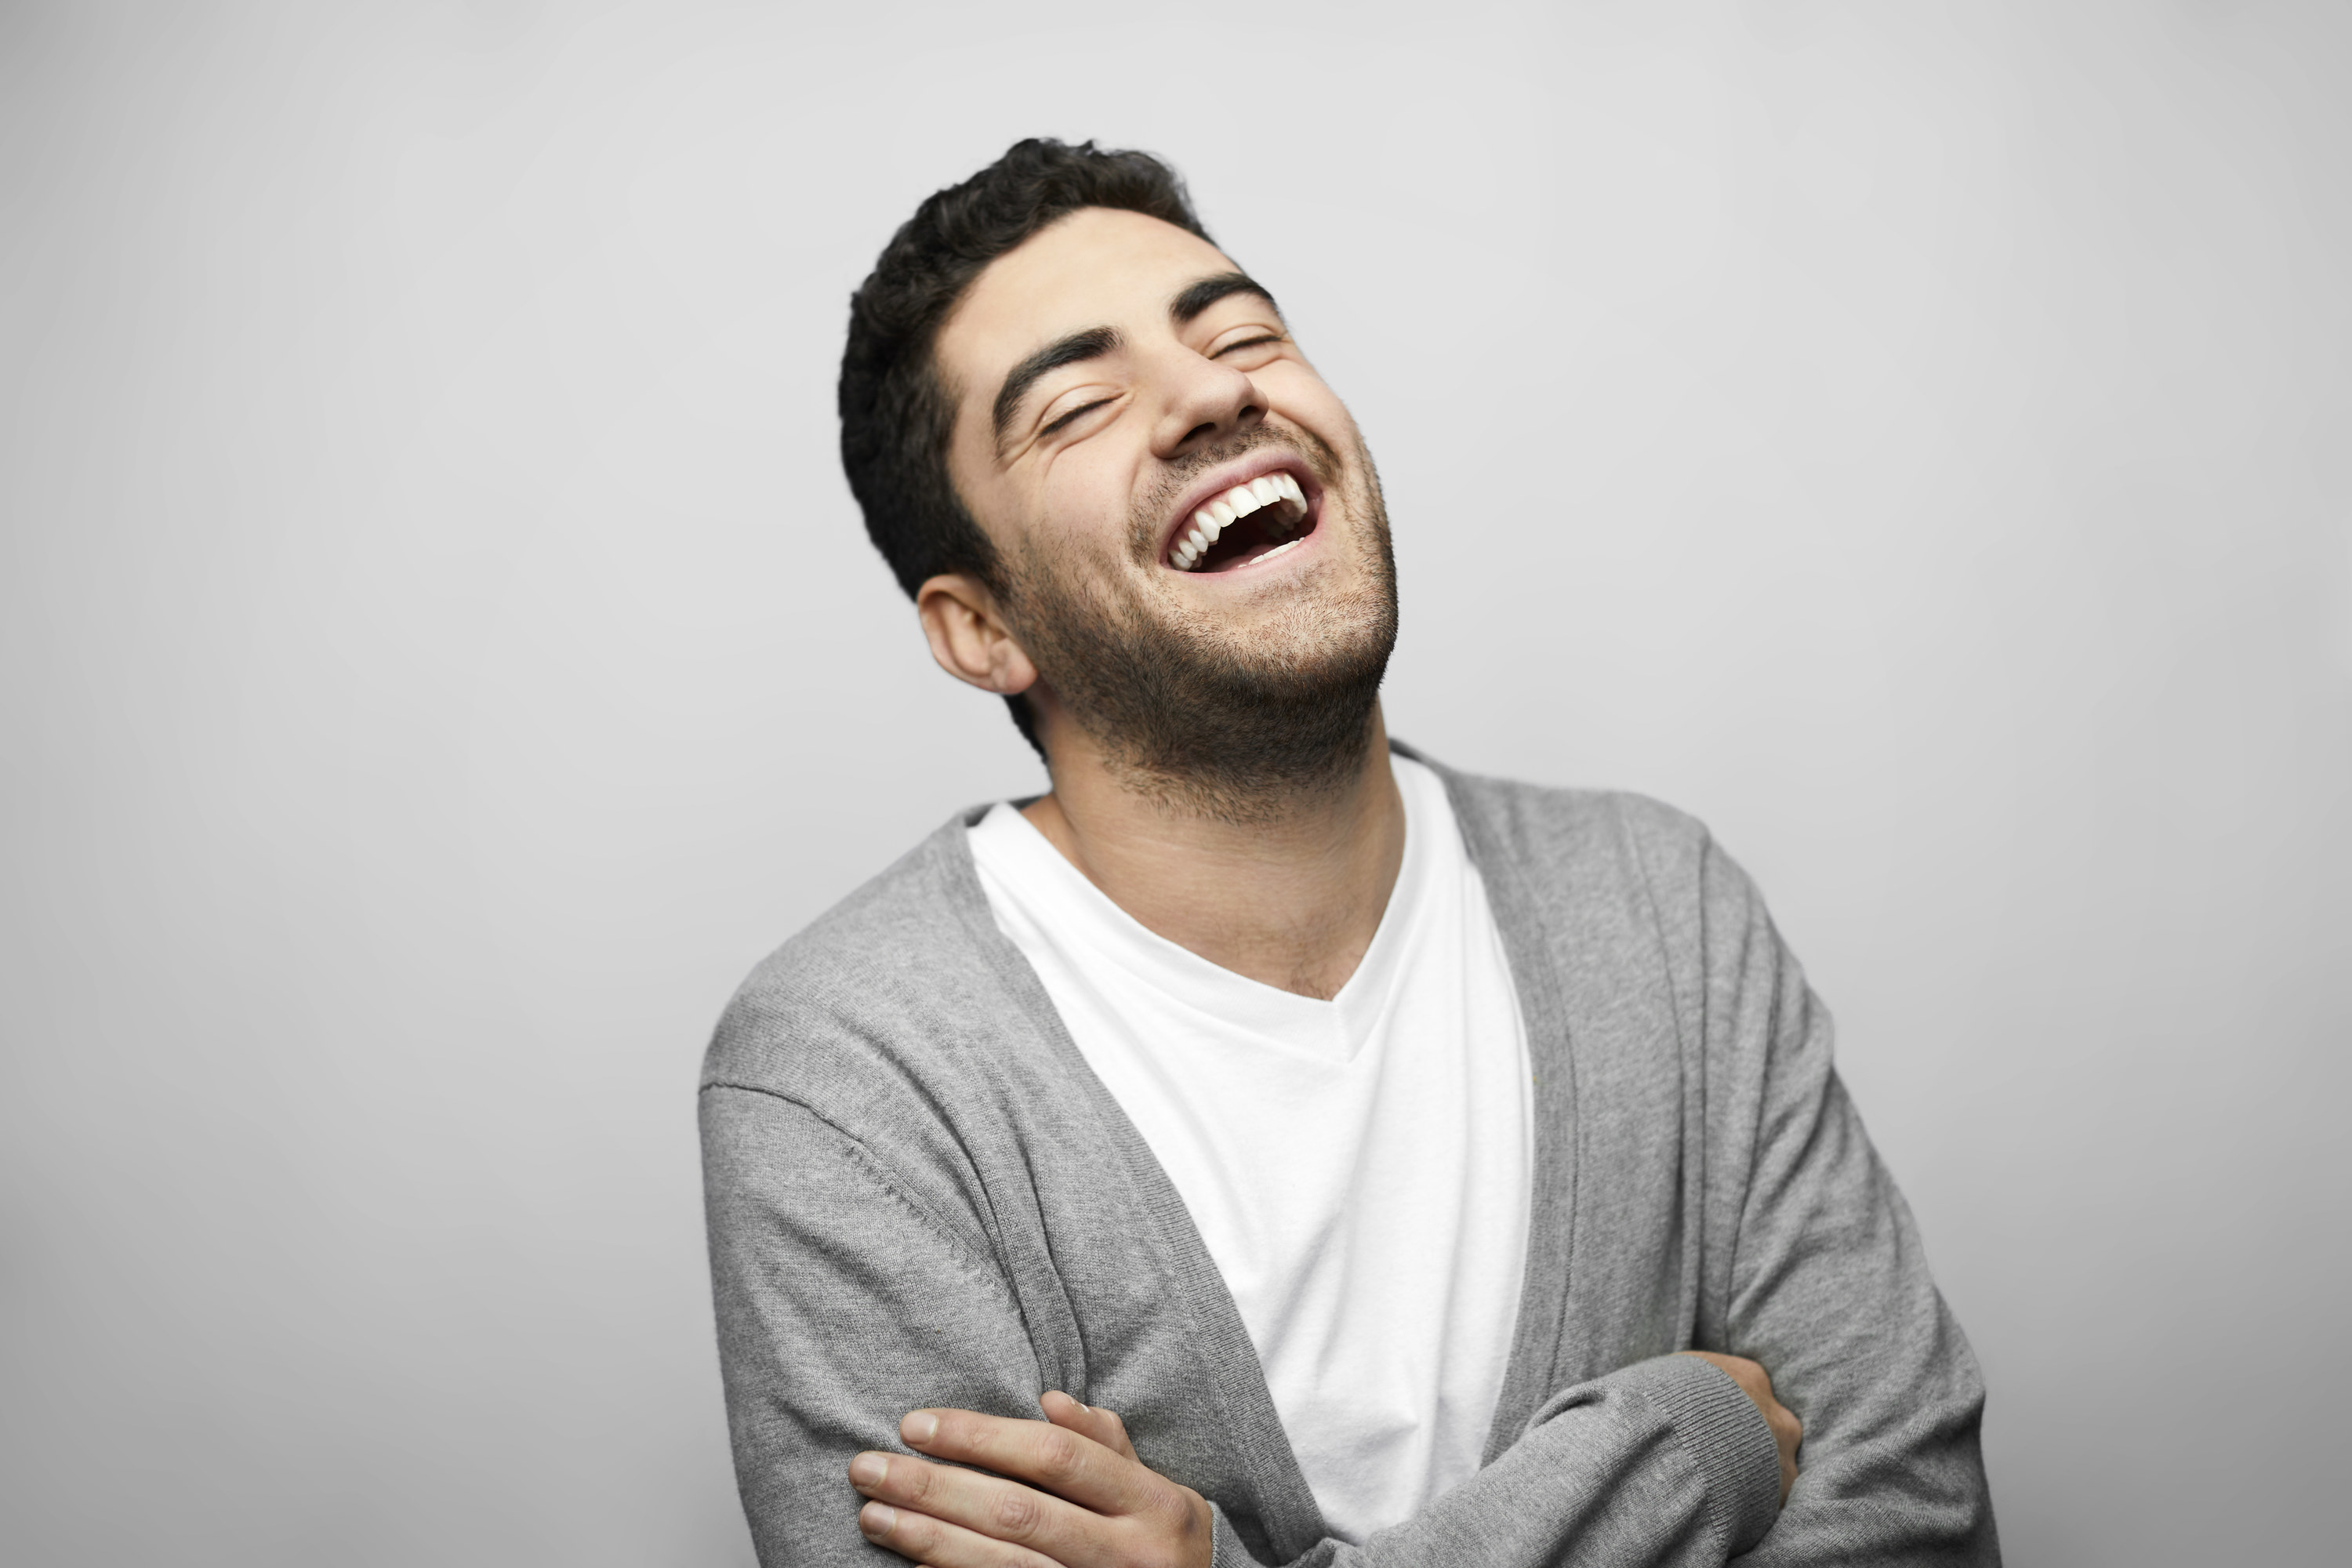 Man in cardigan laughing